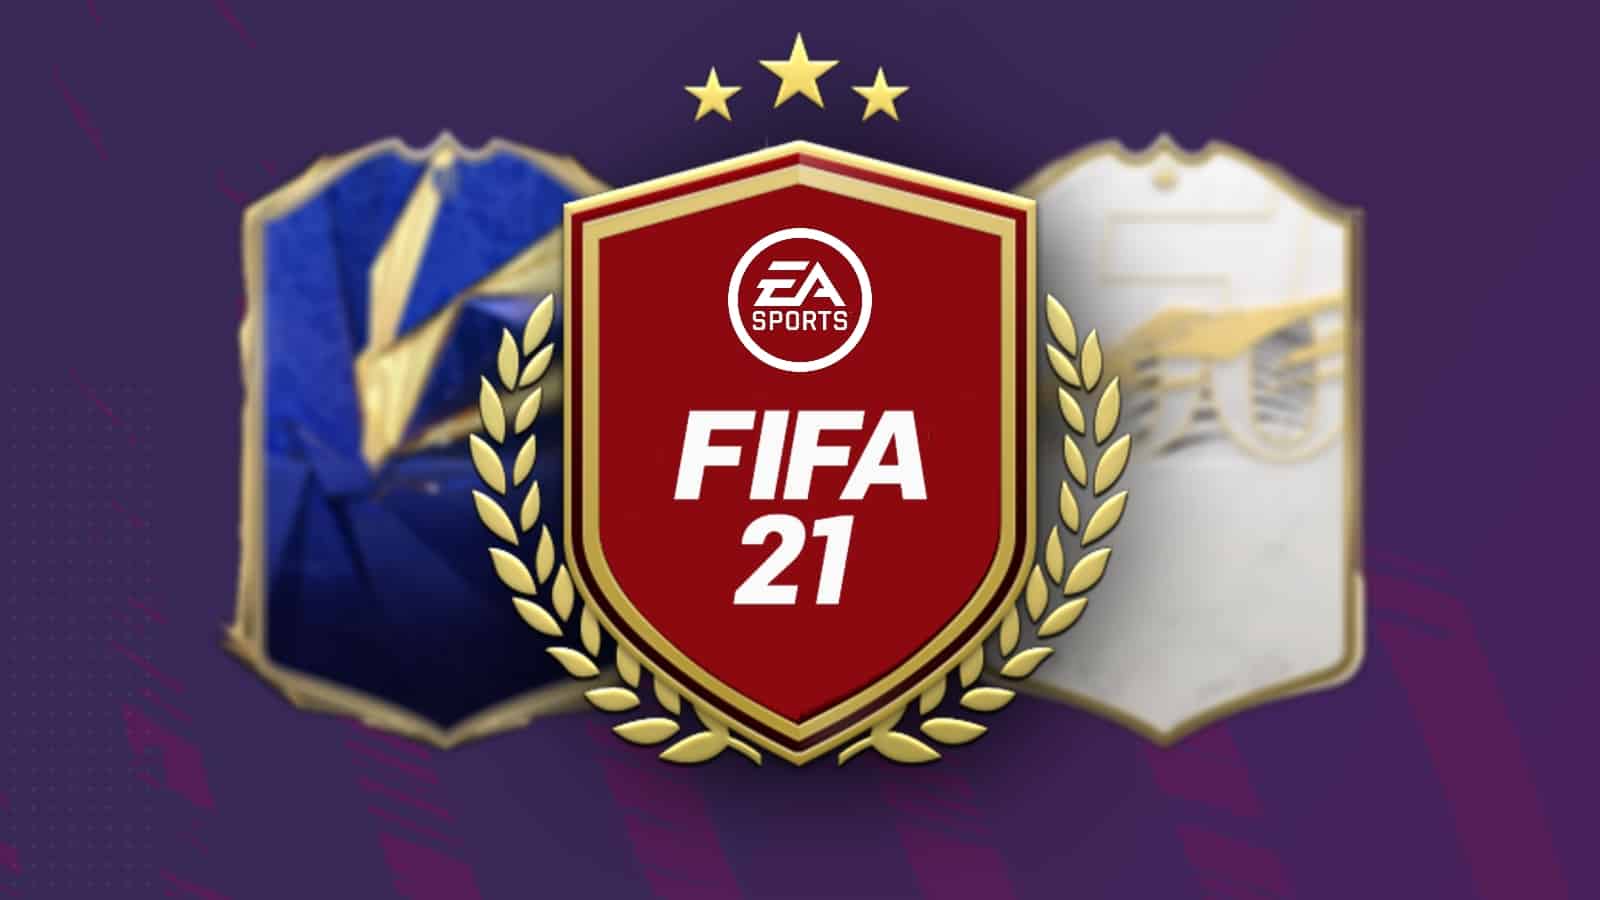 EA SPORTS free FIFA 21 ultimate team rewards